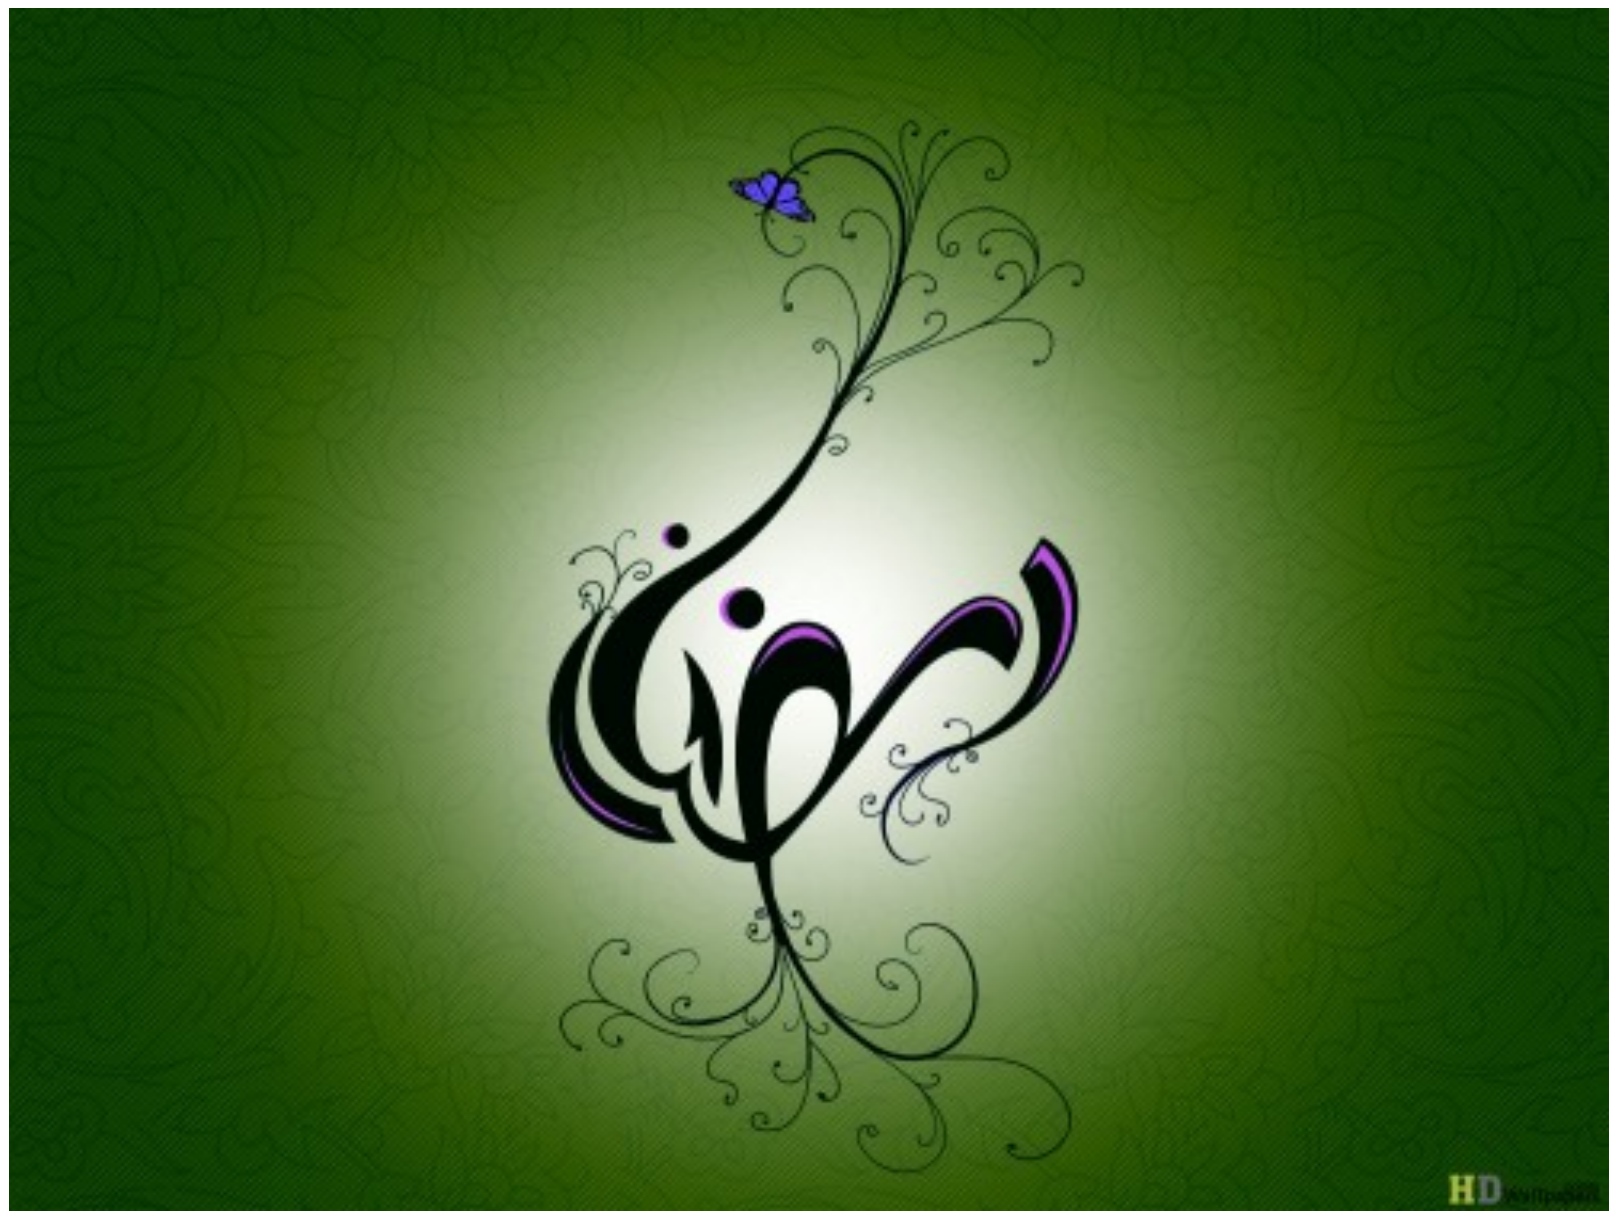 hochwertige ramadan tapete,grün,violett,kalligraphie,lila,grafikdesign